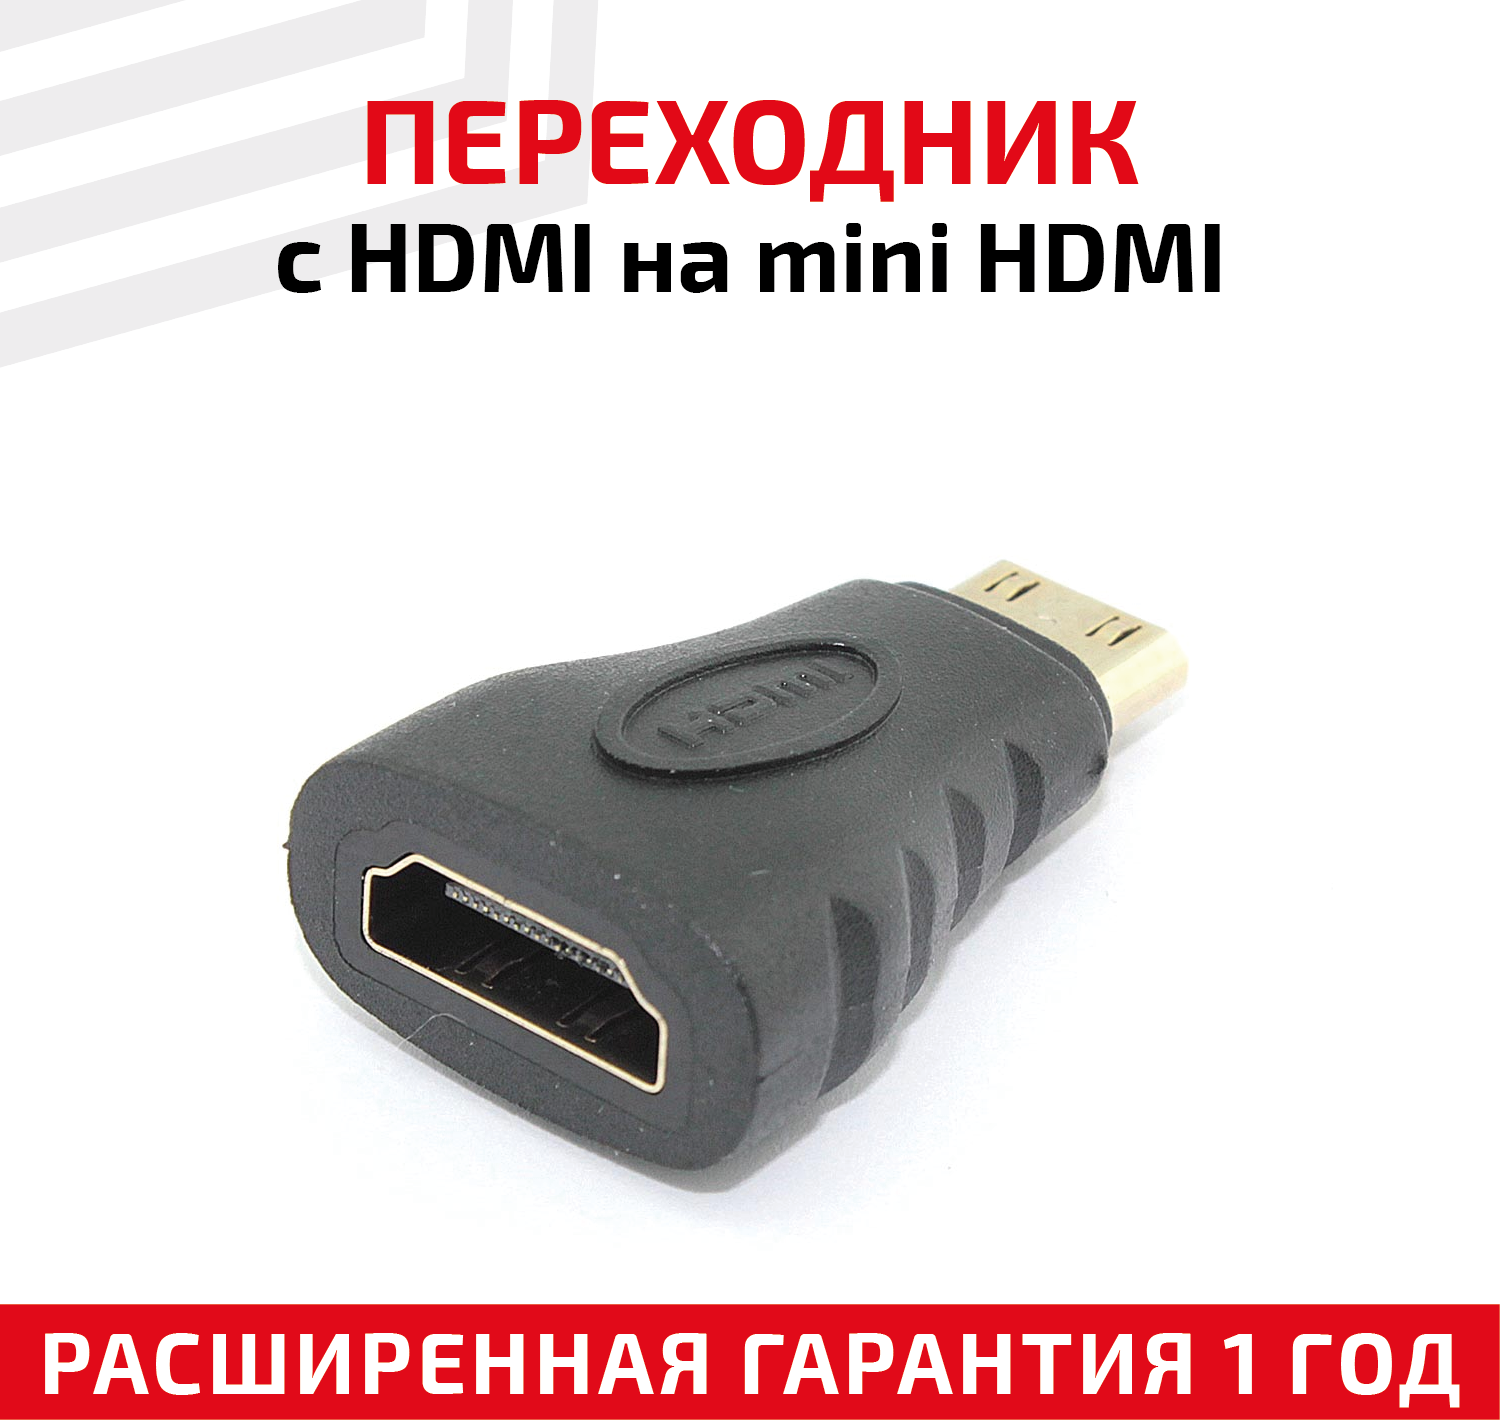 Переходник с HDMI на Mini HDMI